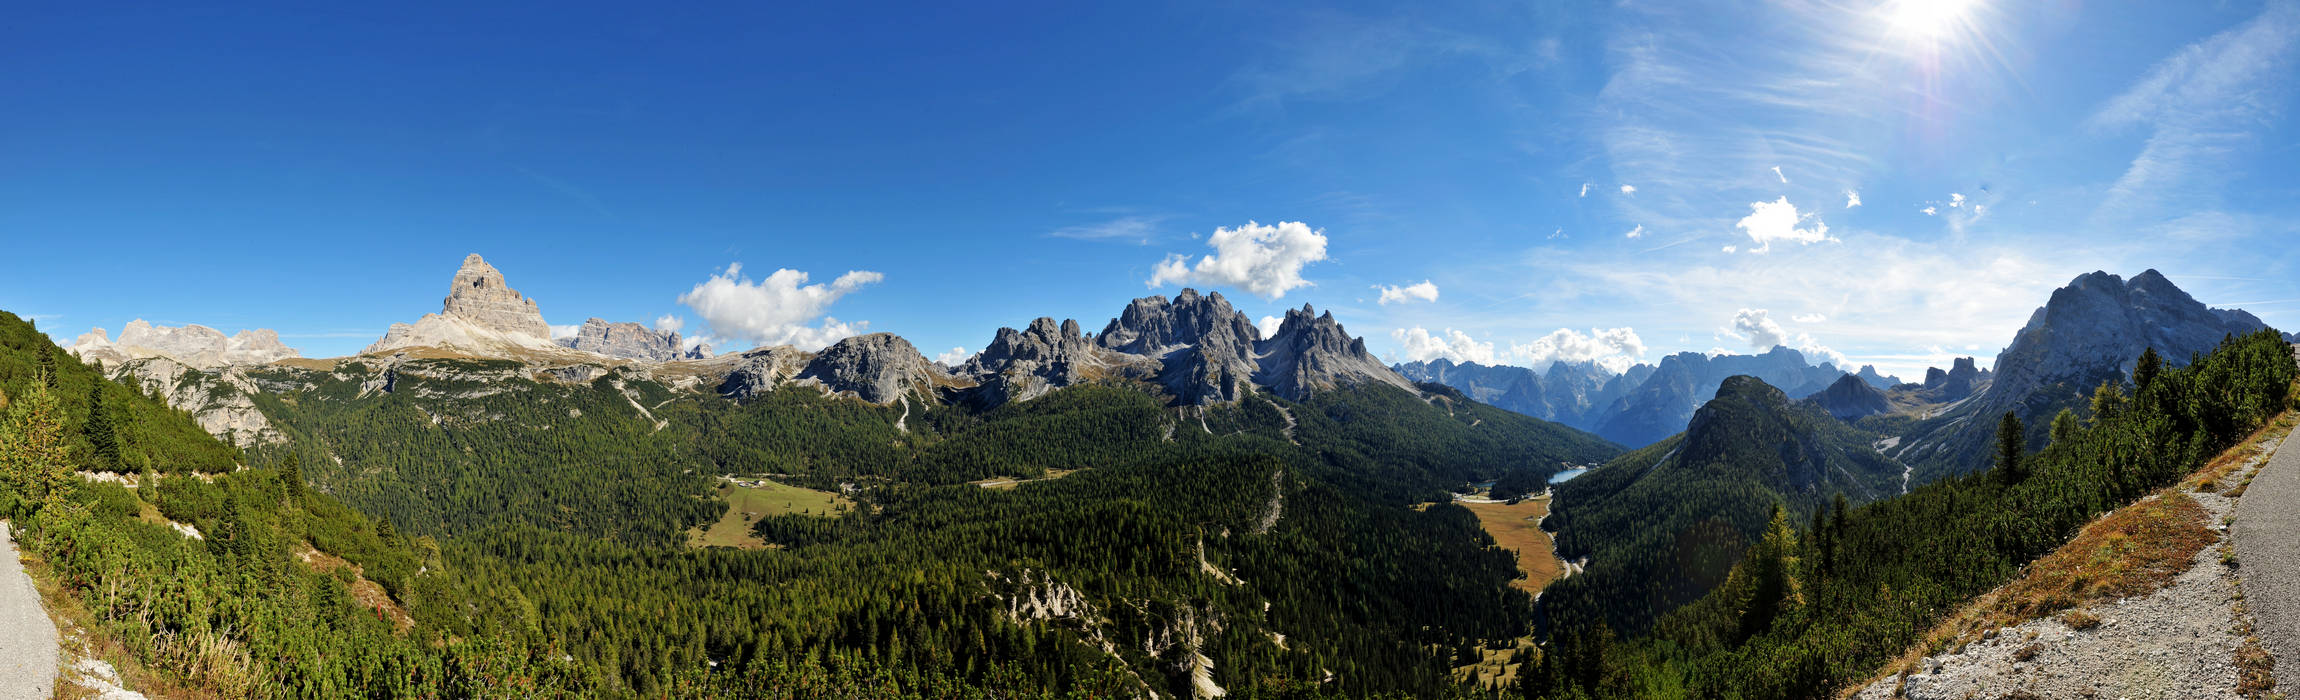 Monte Piana, Misurina, Tre Cime di Lavaredo, Dolomiti di Sesto